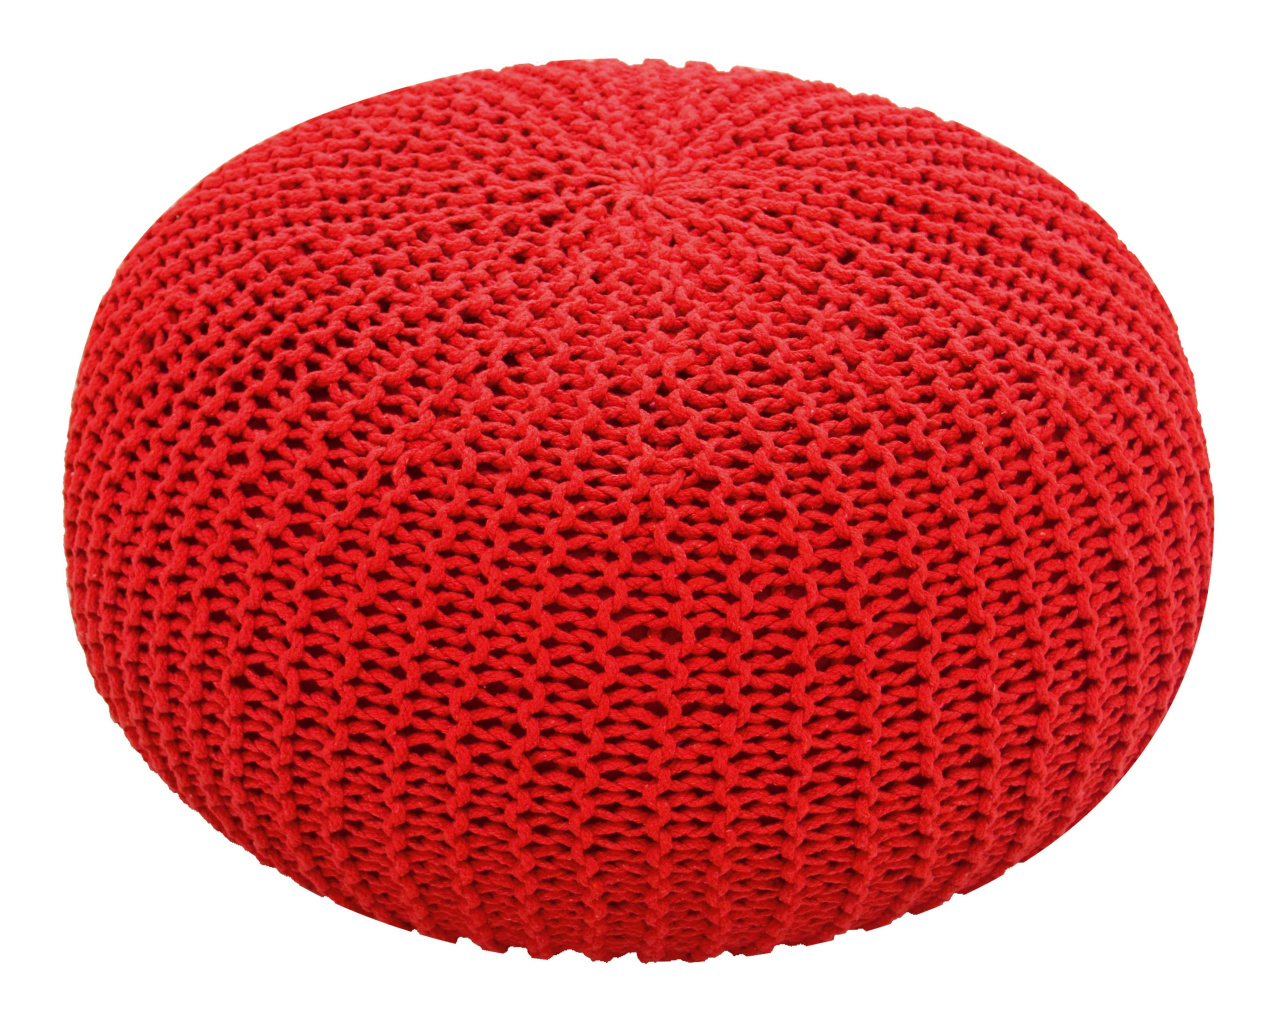 Pufe vermelho com acabamento em crochê.<br>Foto: Divulgação 